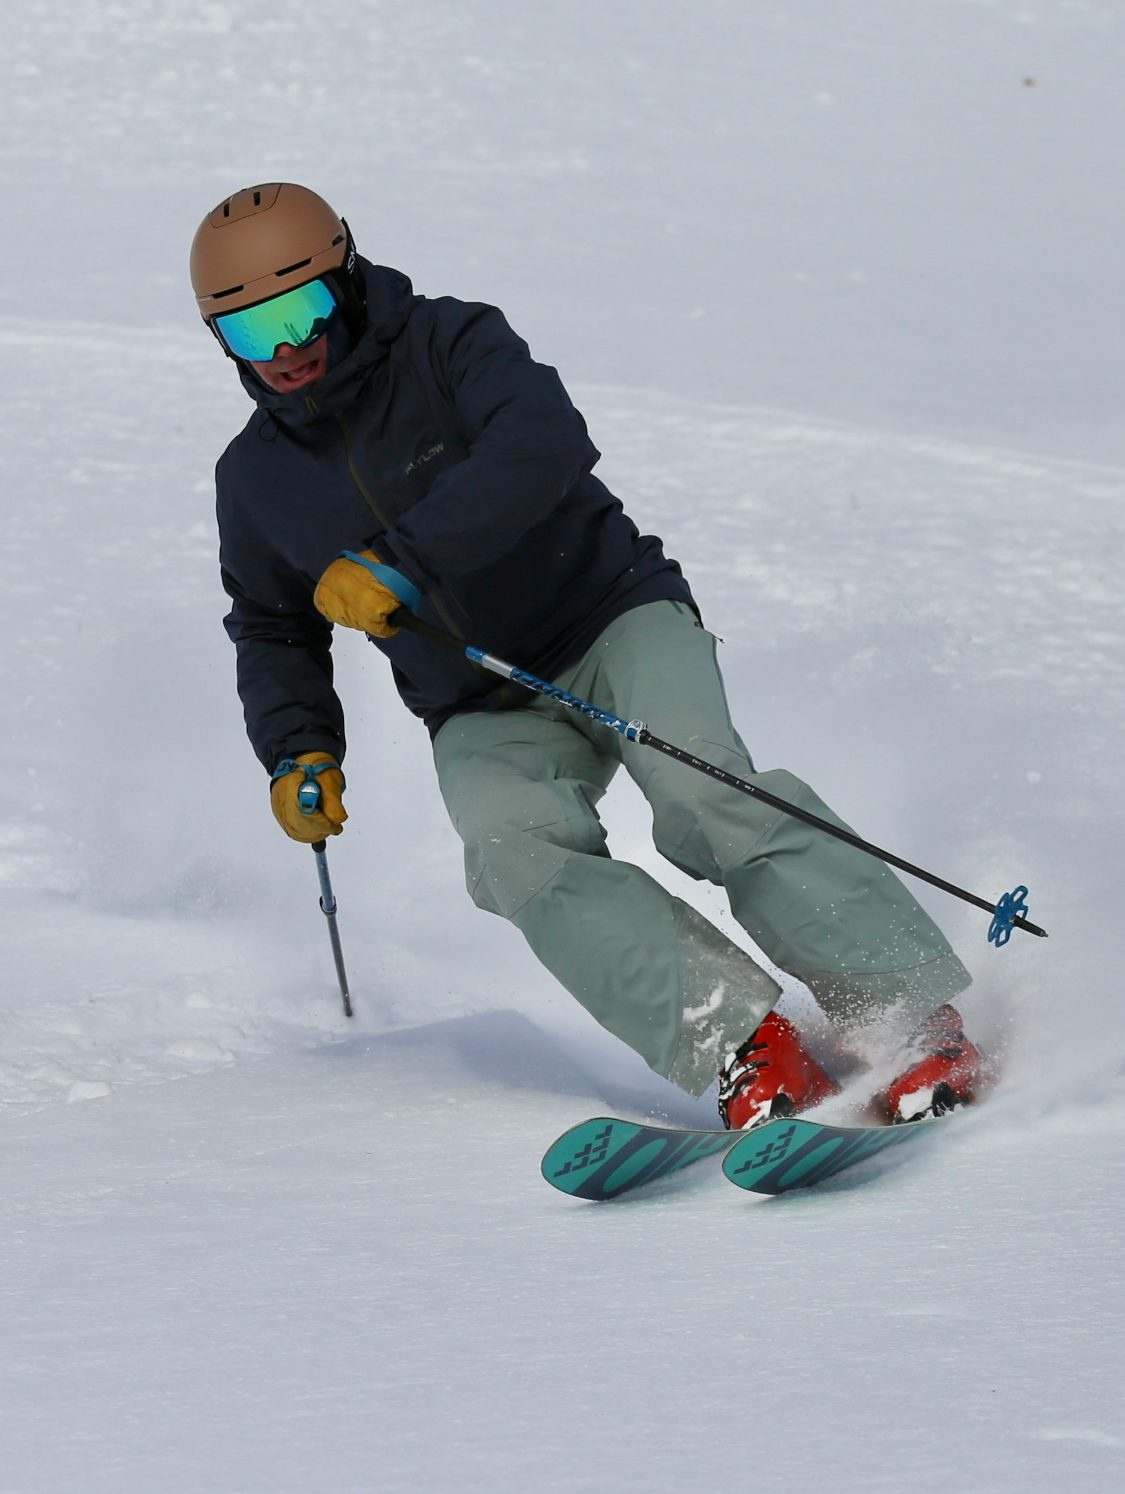 Ski Expert Greg Lawler